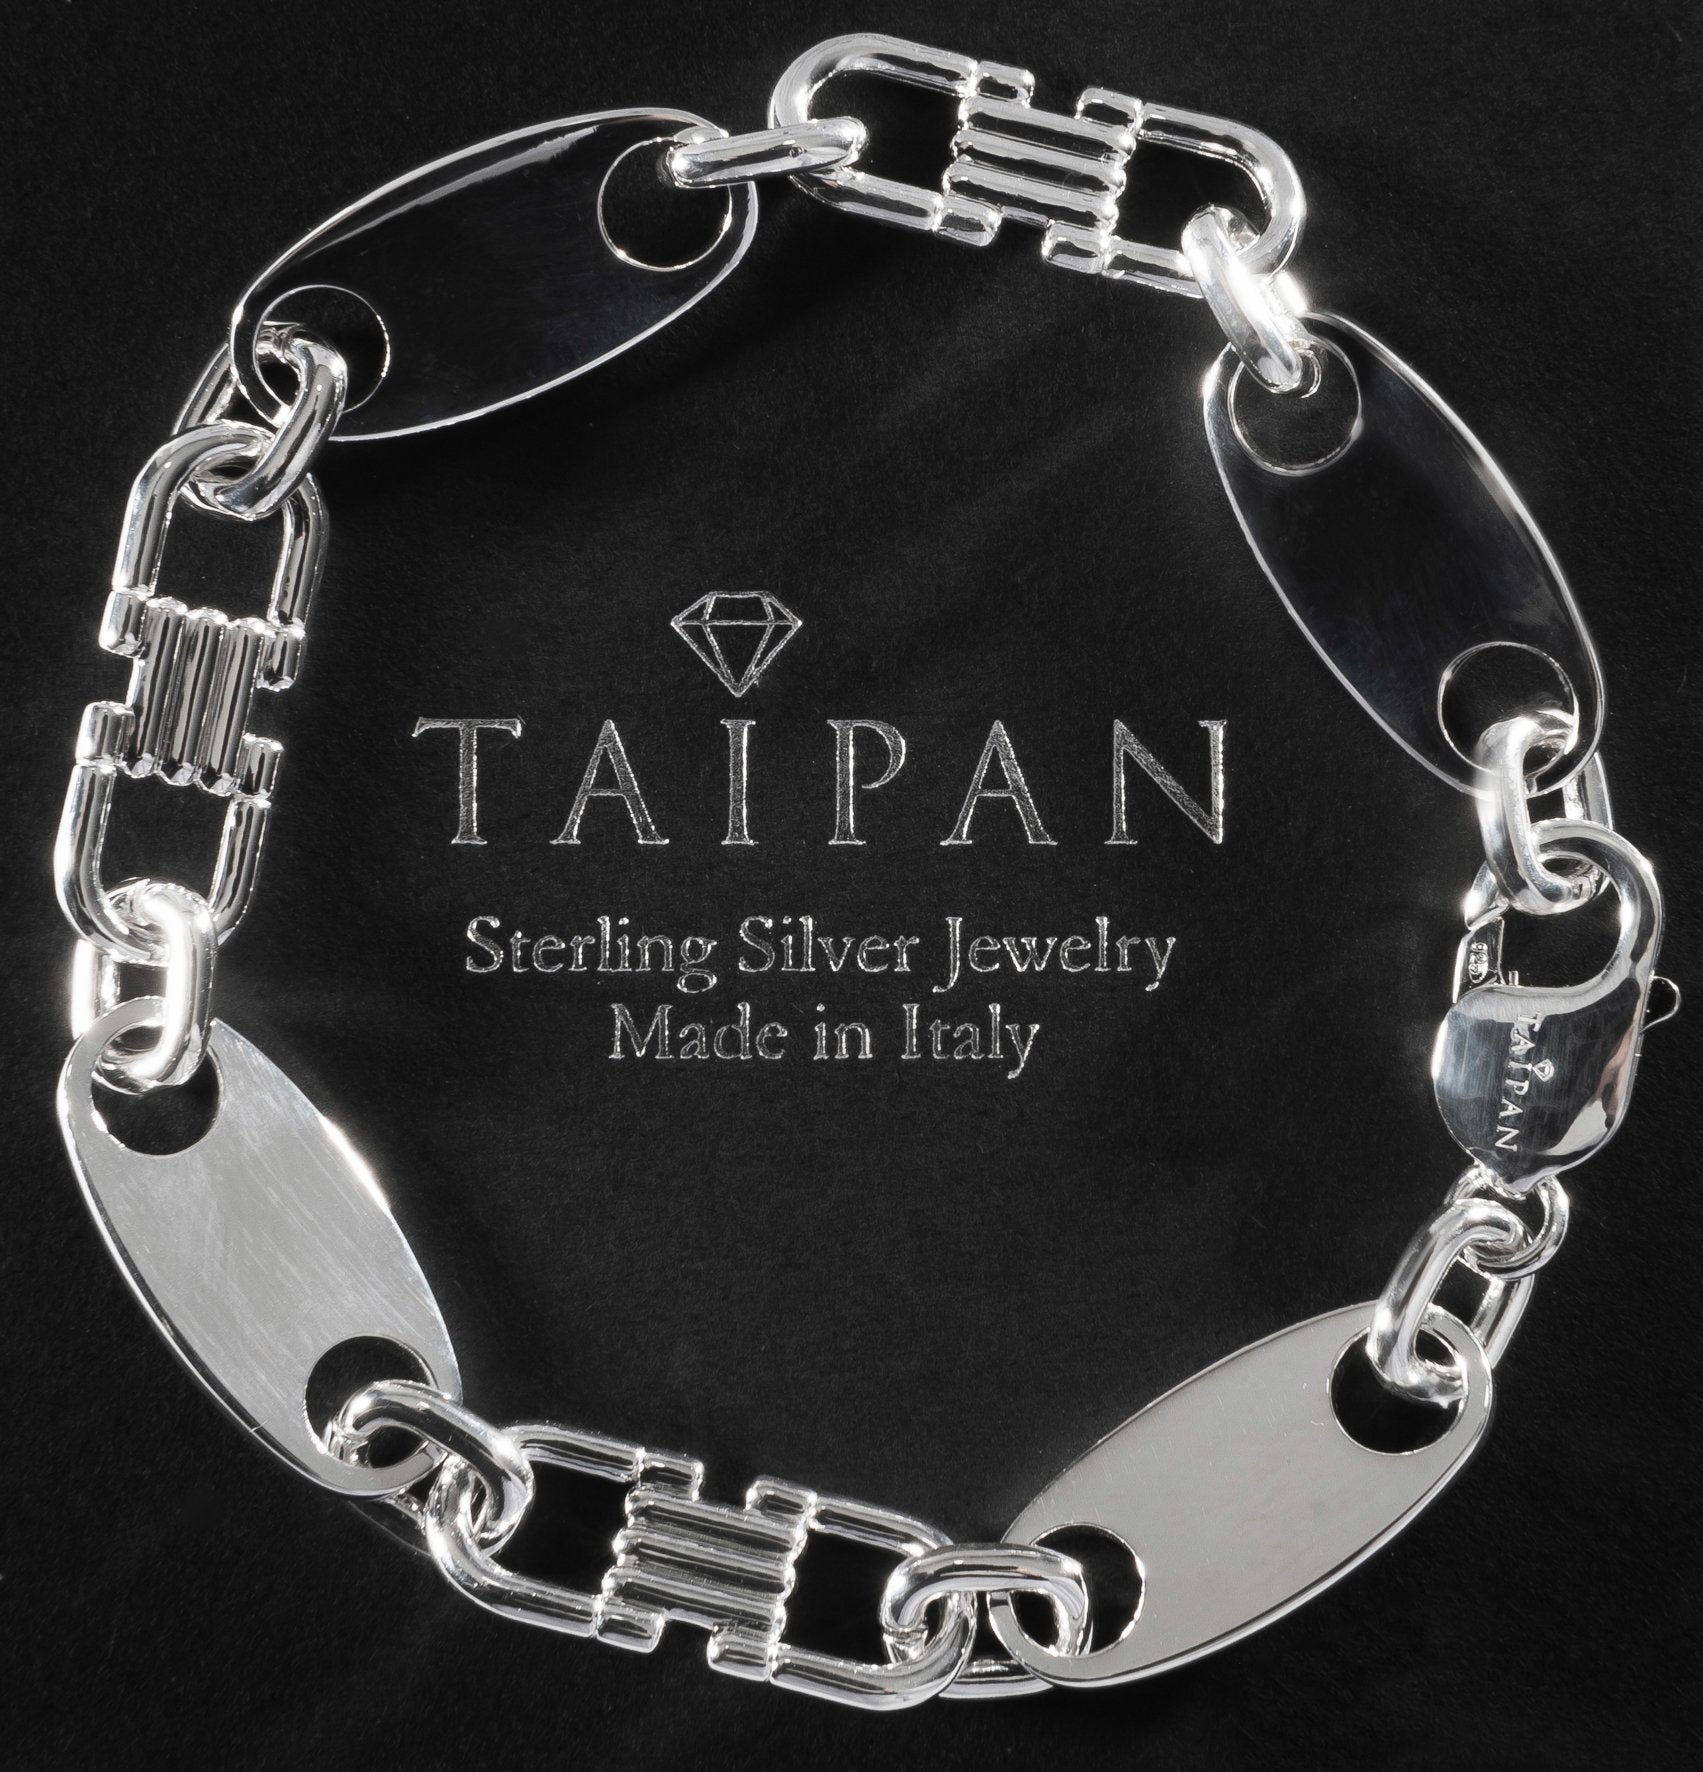 Taipan Jewelry - 10mm breite und 70cm lange Plattenkette aus 925  Sterlingsilber hergestellt in Italien. Das dazu passende Armband haben wir  auch. Beim Kauf von Kette und Armband erhaltet ihr 20% Rabatt